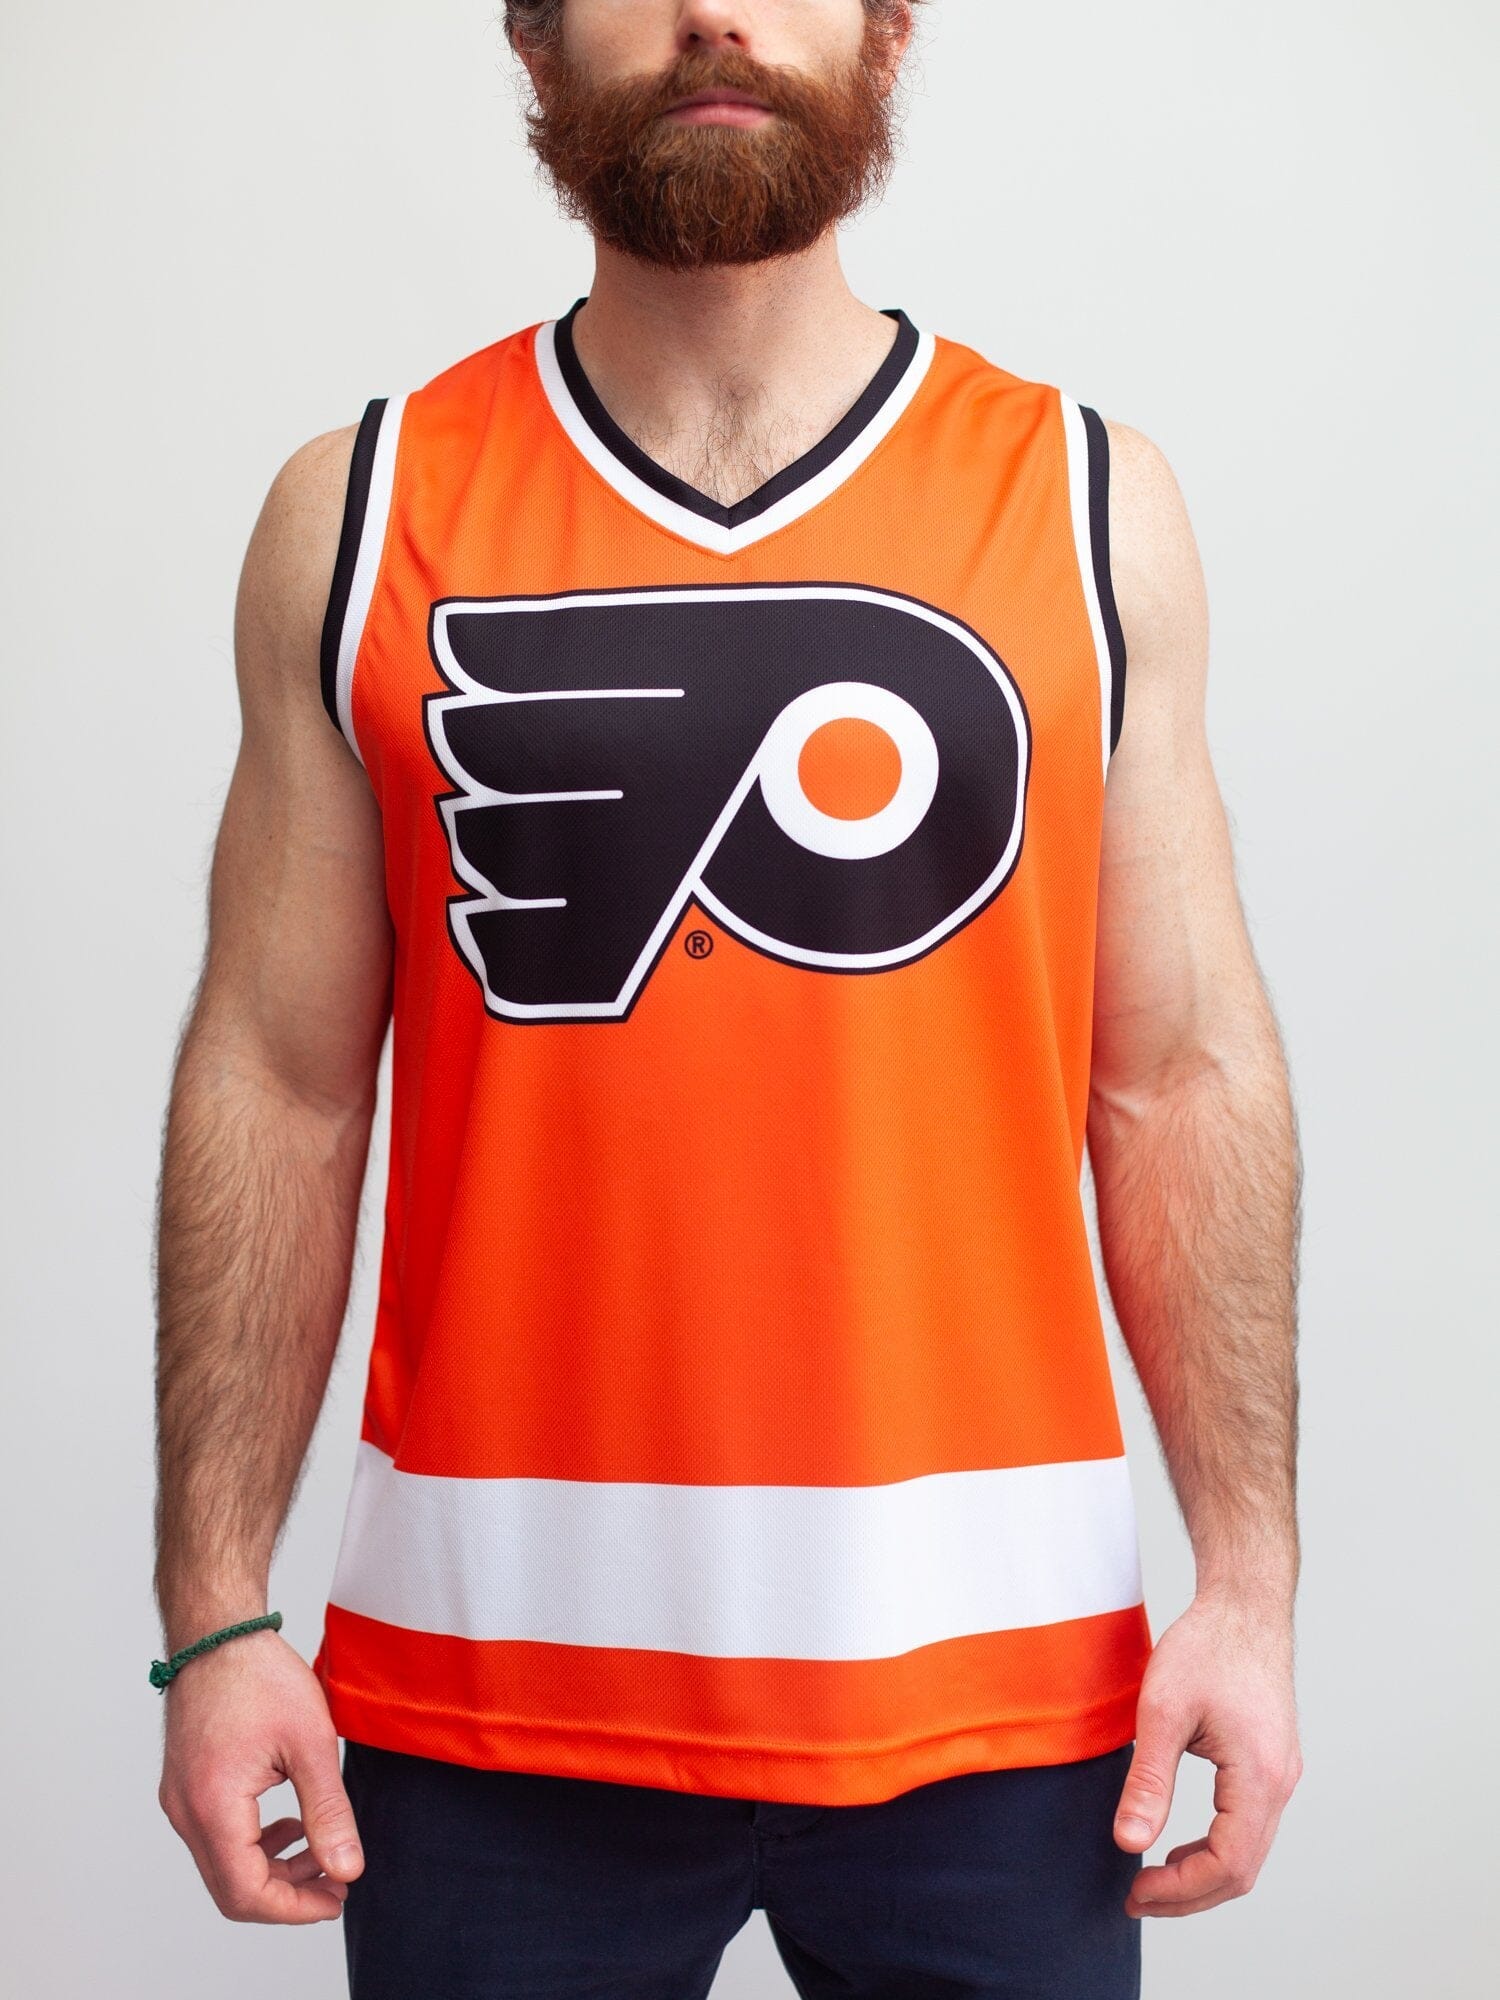 Philadelphia Flyers NHL Brand Youth Jersey L/XL